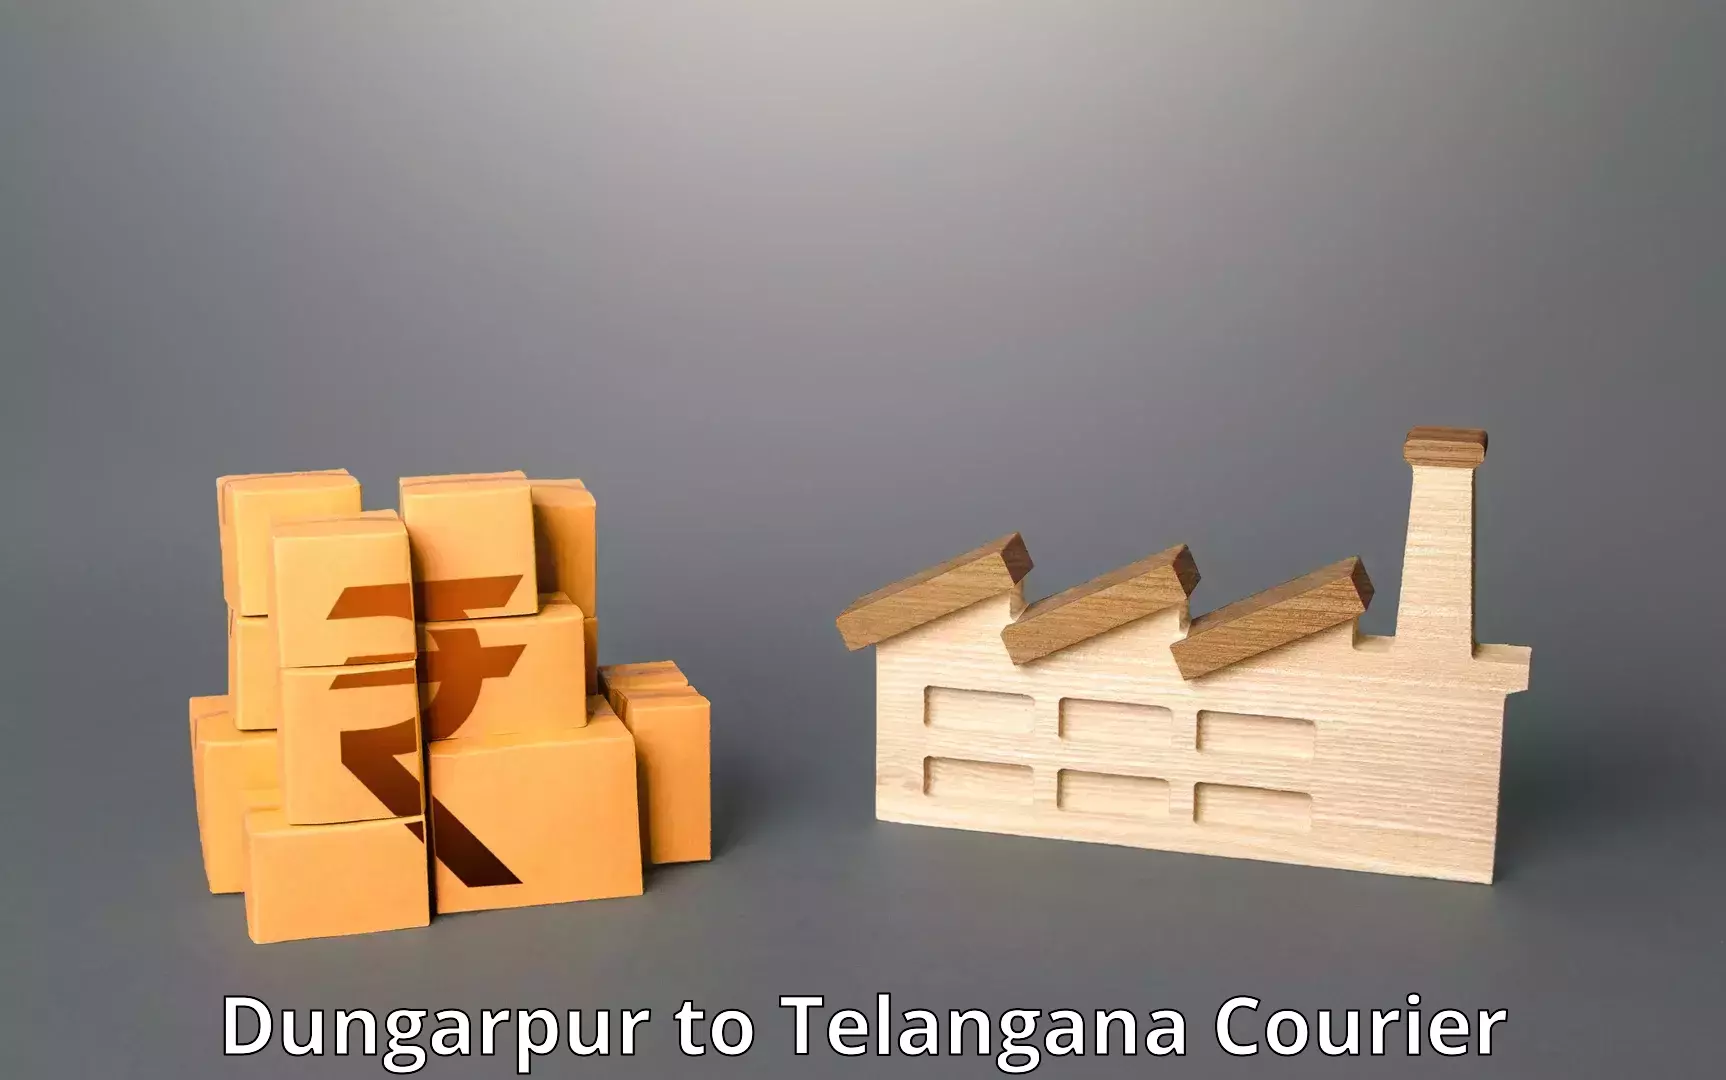 24/7 courier service Dungarpur to Telangana